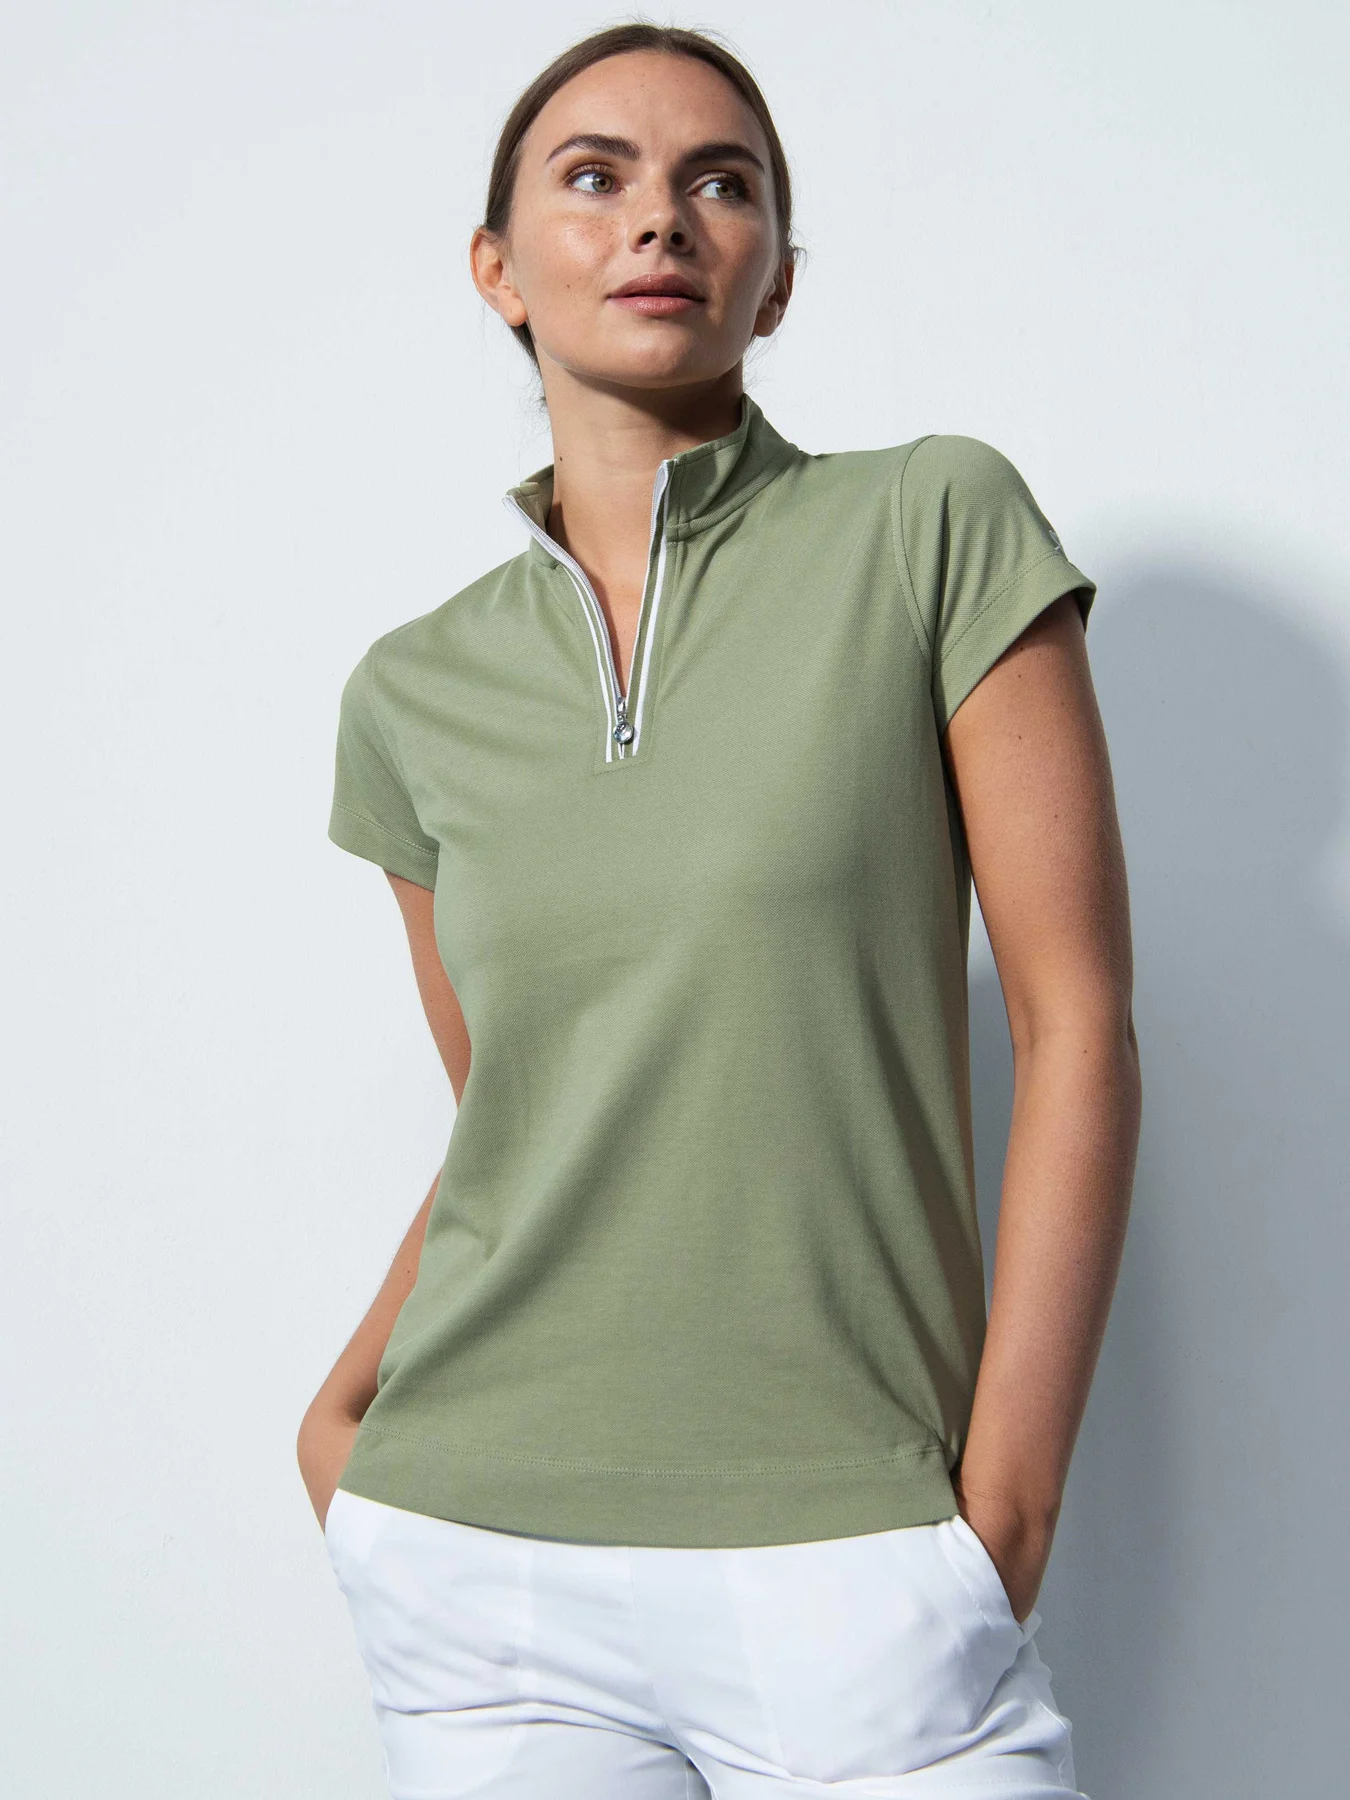 Brug Daily Sports Kim Cap S Polo Shirt - Hedge til en forbedret oplevelse